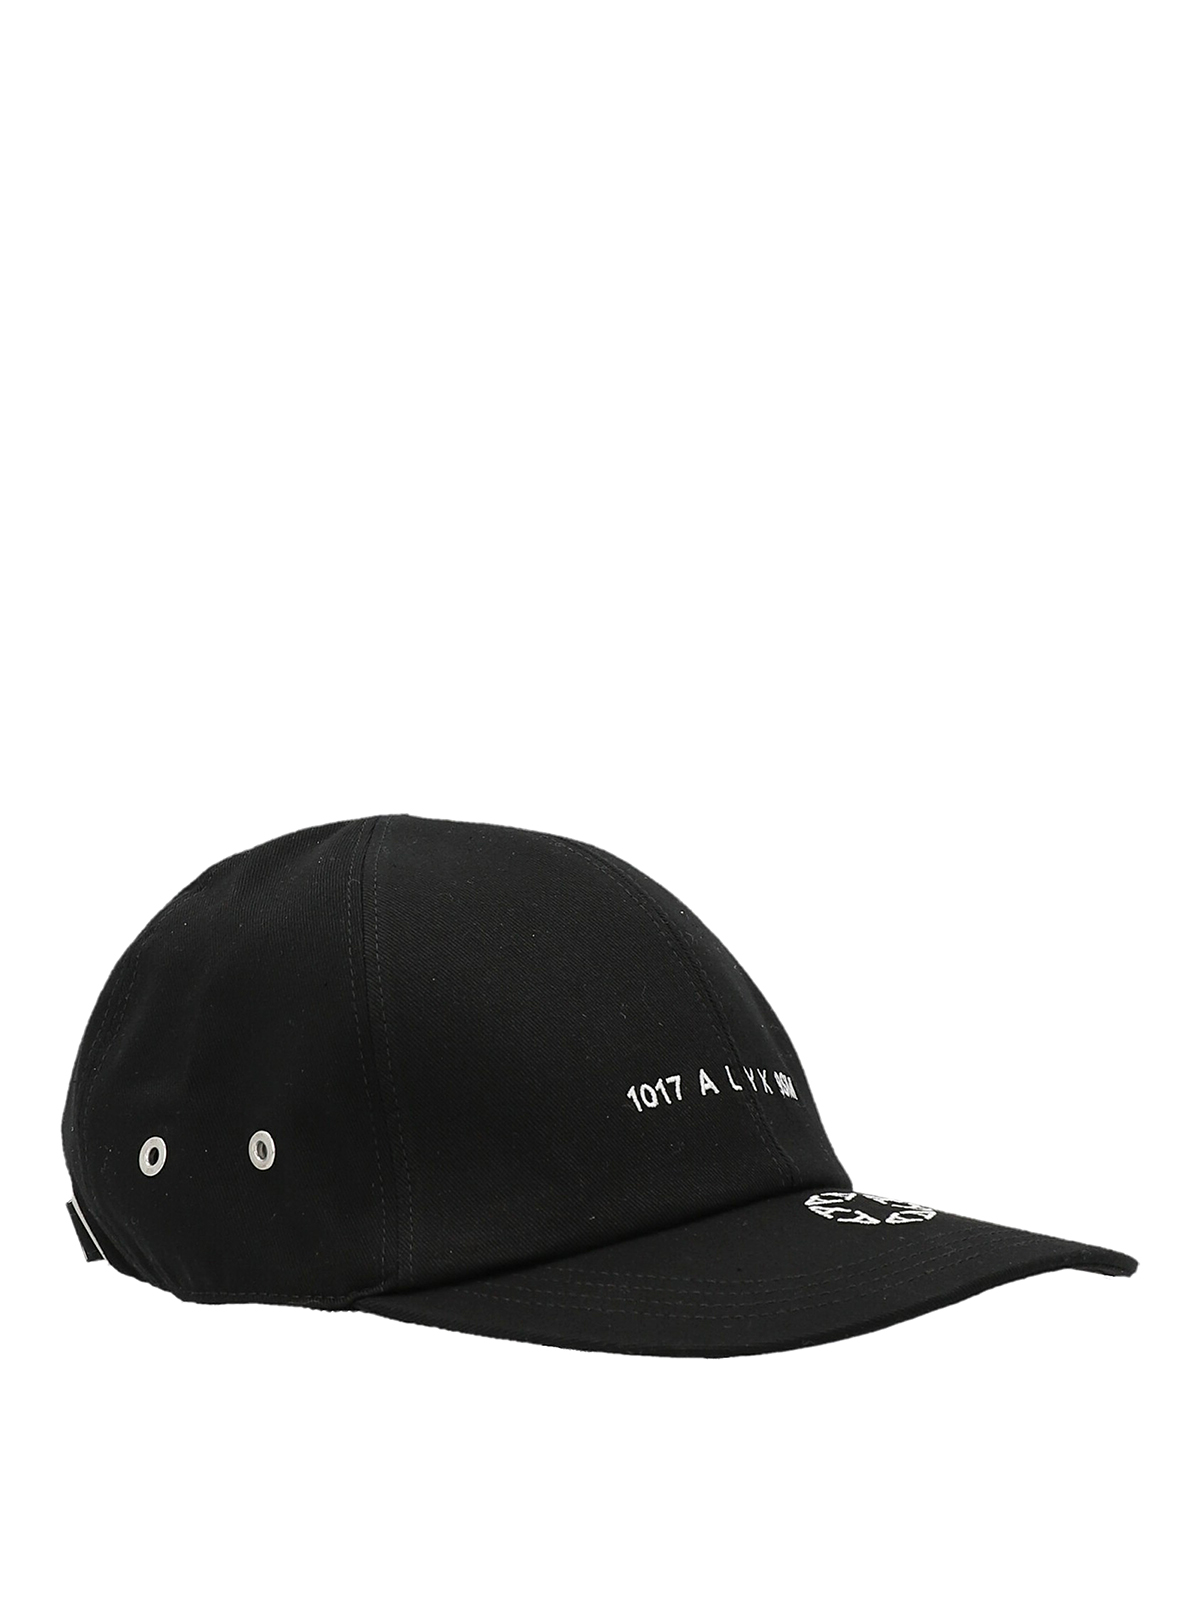 Hats & caps 1017 Alyx 9sm - Logo cap - AAUHA0060FA03BLK0001